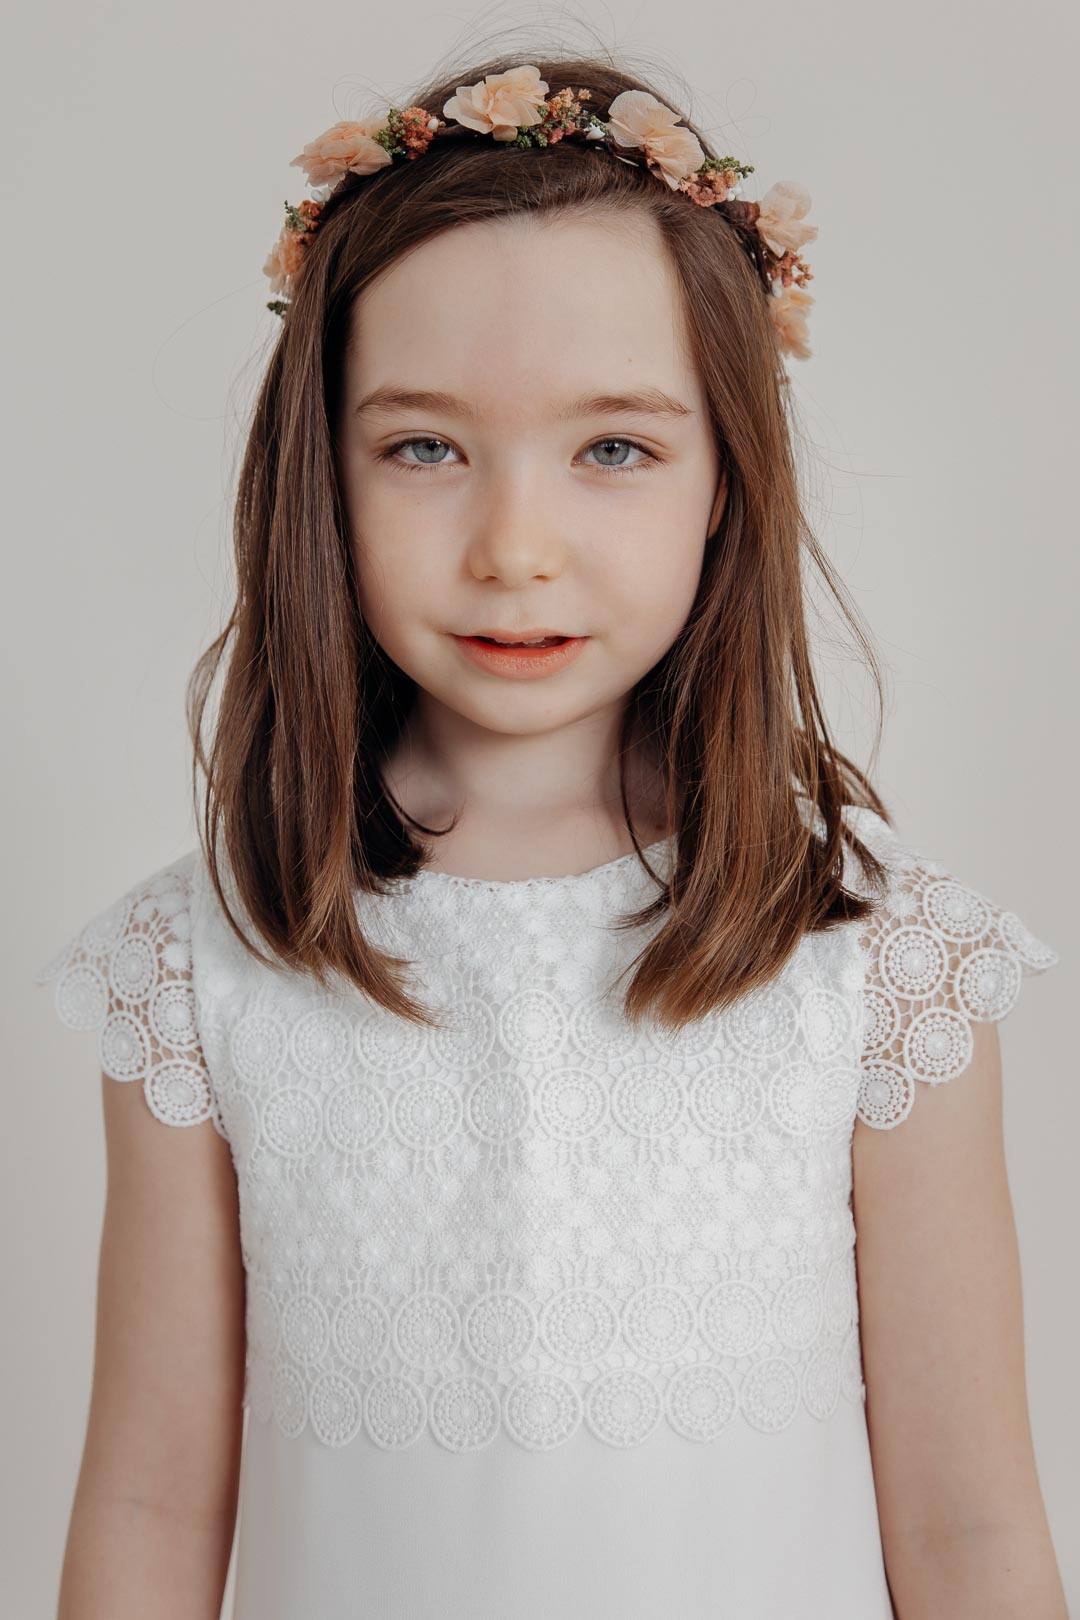 Mädchenkleid mit Spitze und Perlendetails – Ingrid Ivory